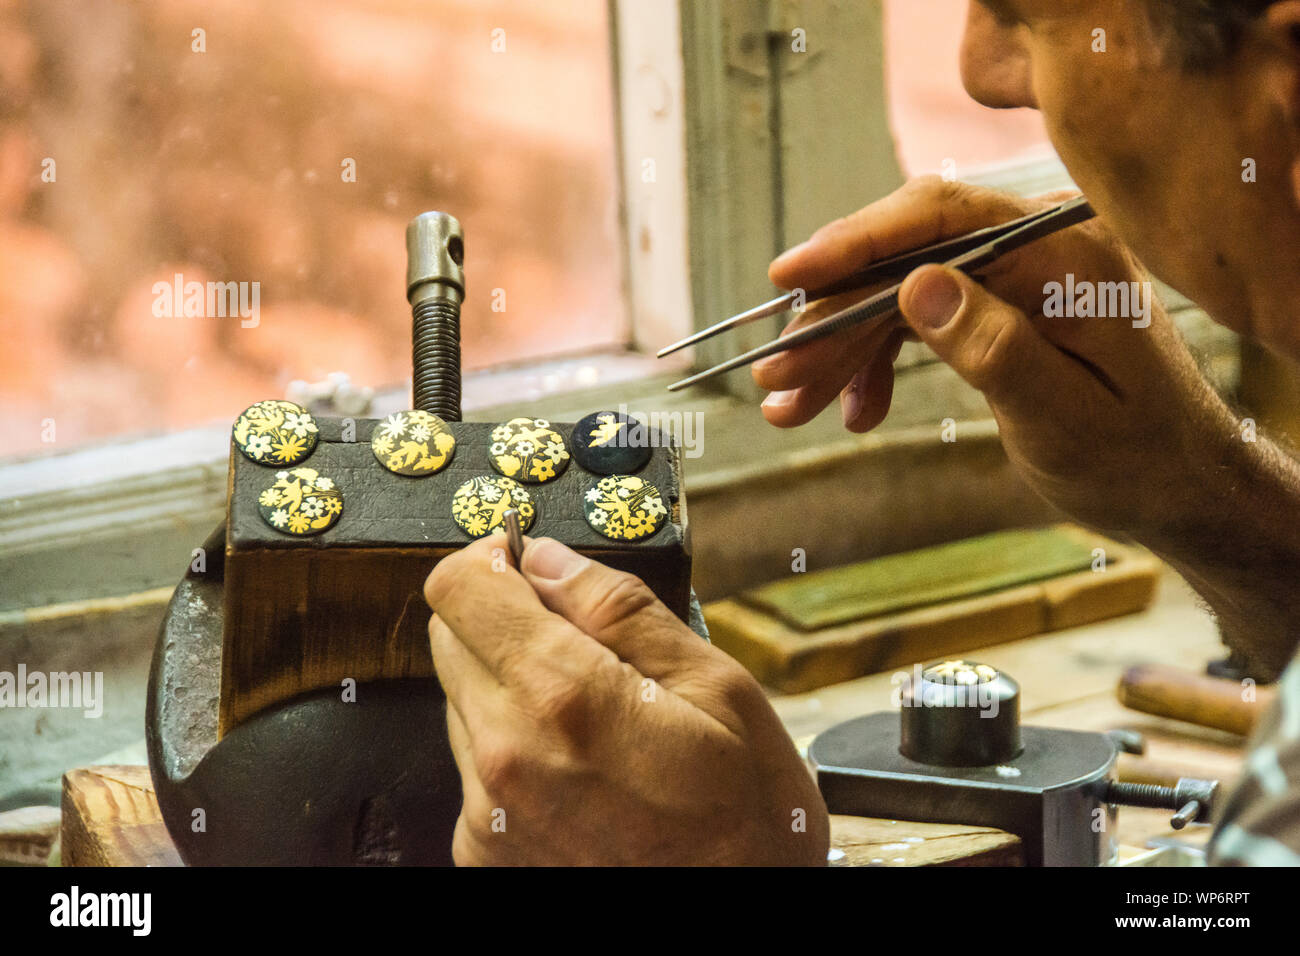 Un artesano español trabaja en pequeñas piezas de arte lo suficientemente pequeñas como para requerir el uso de un par de pinzas. Foto de stock